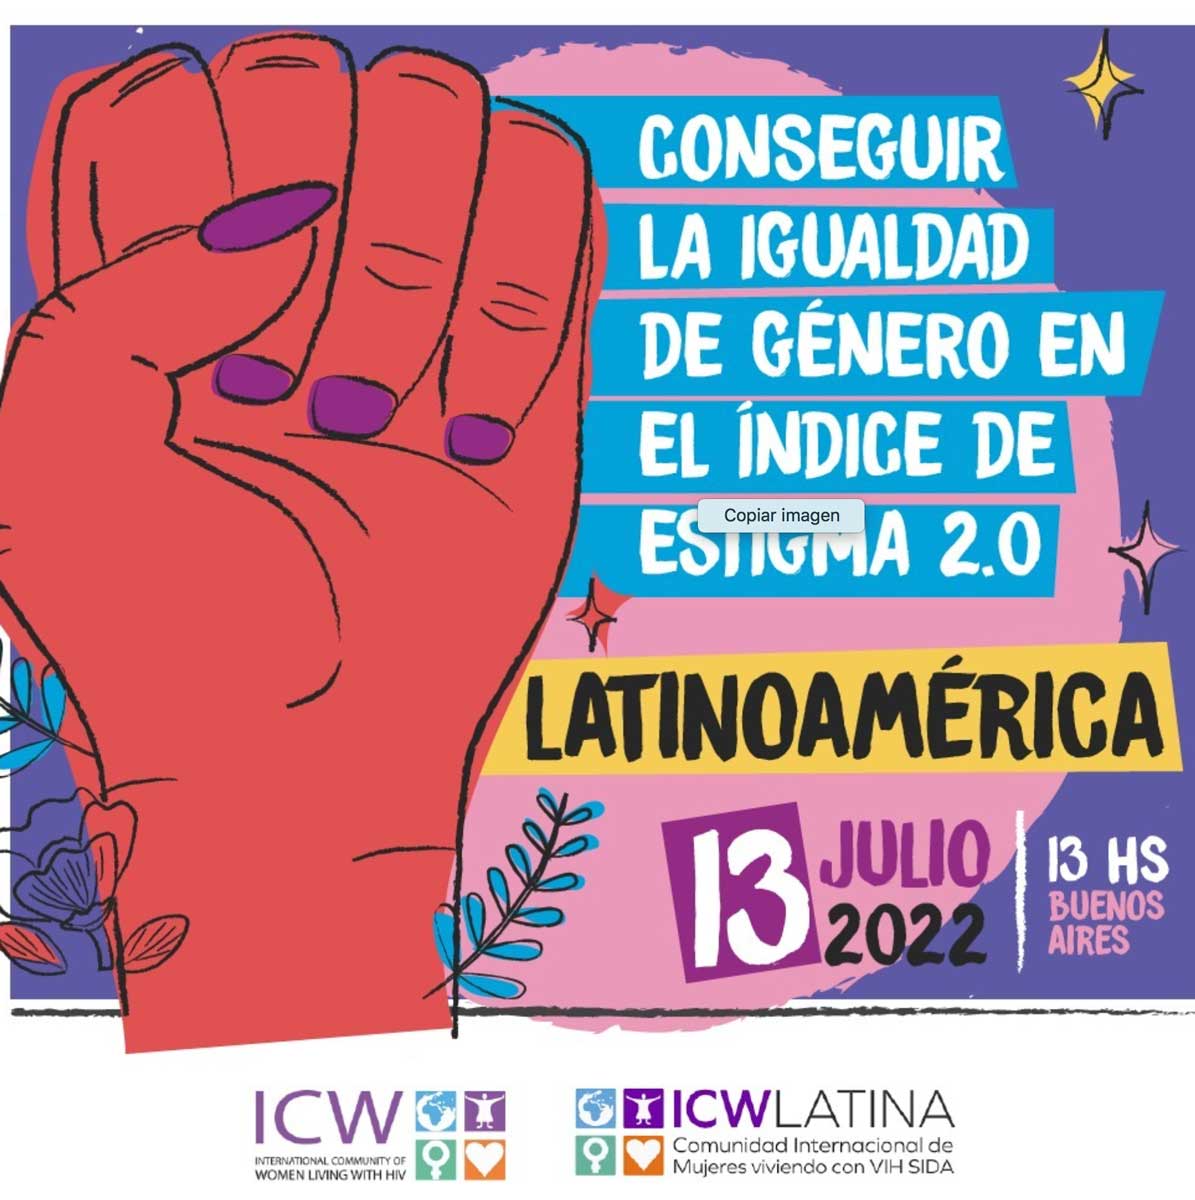 ¡Únete al primer taller para lograr la igualdad de género en el Índice de Estigma 2.0 en América Latina!